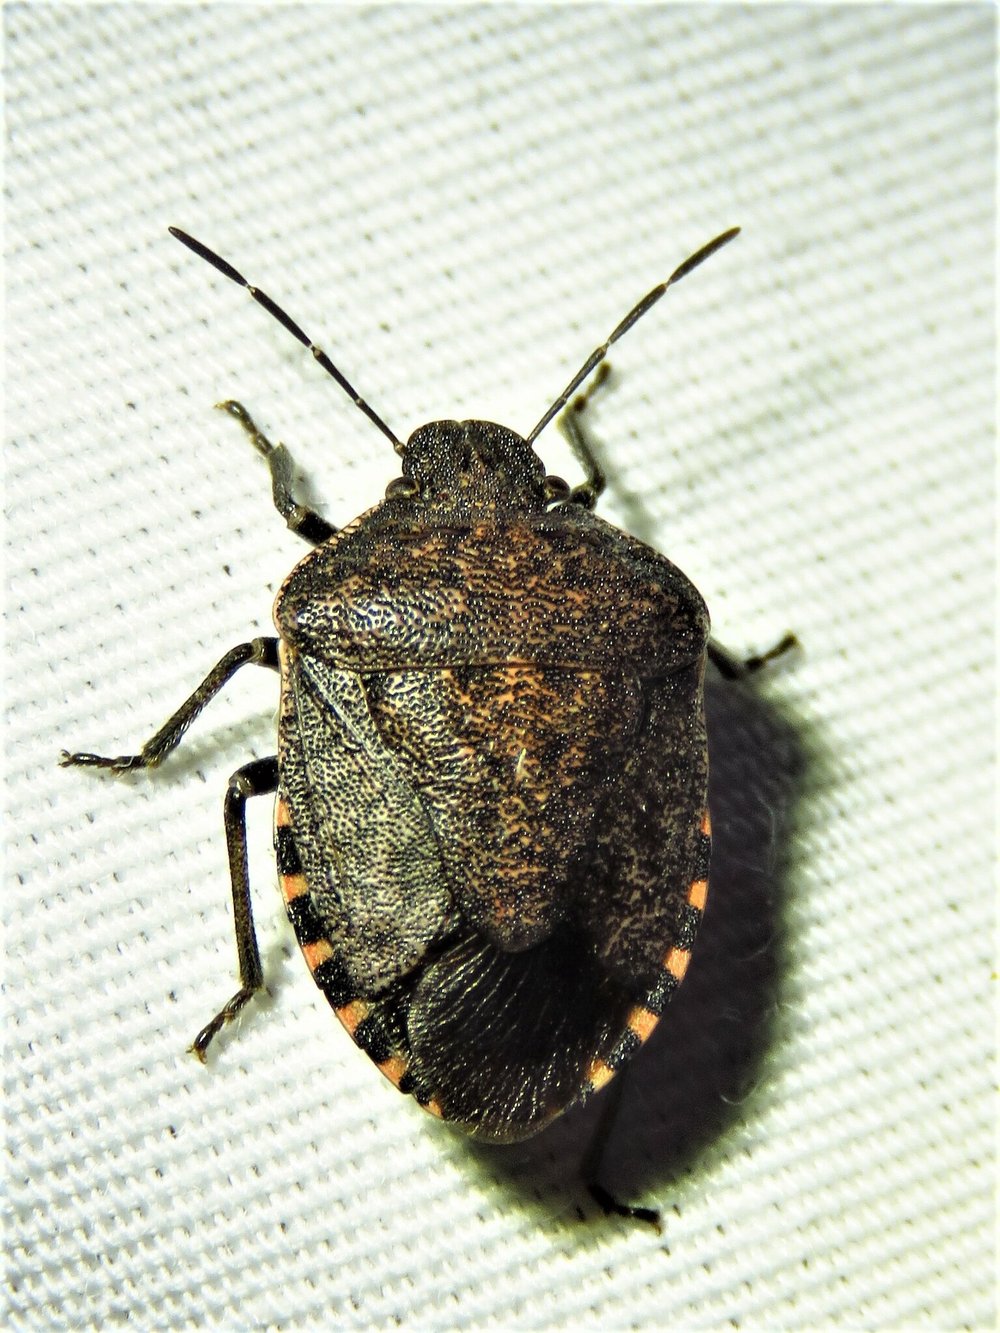   Stink Bug  ( Genus Holcostethus ) photo by, annikaml 